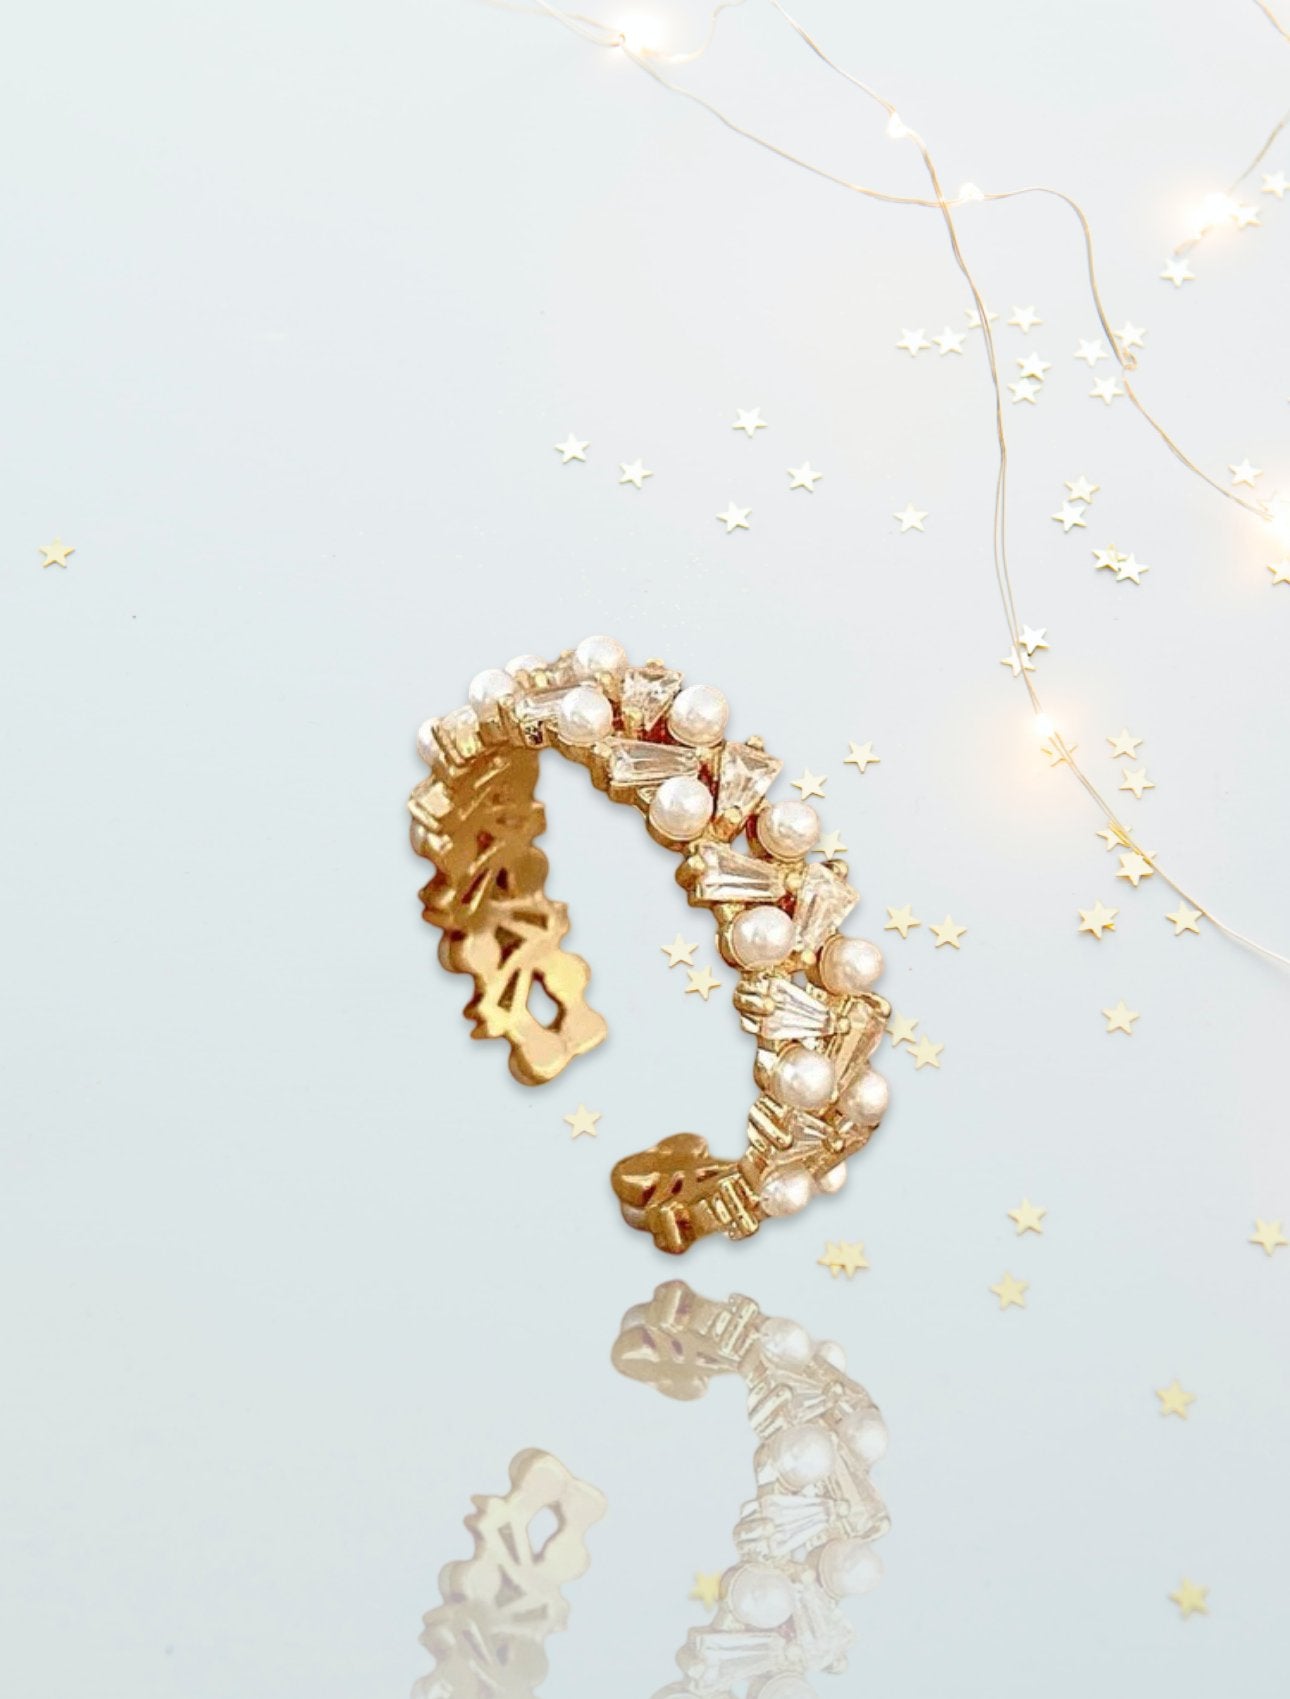 22 K Gold Plated Rings | Artisan | Craftsmanship | Gemstones | Dubai |Penelope Made This